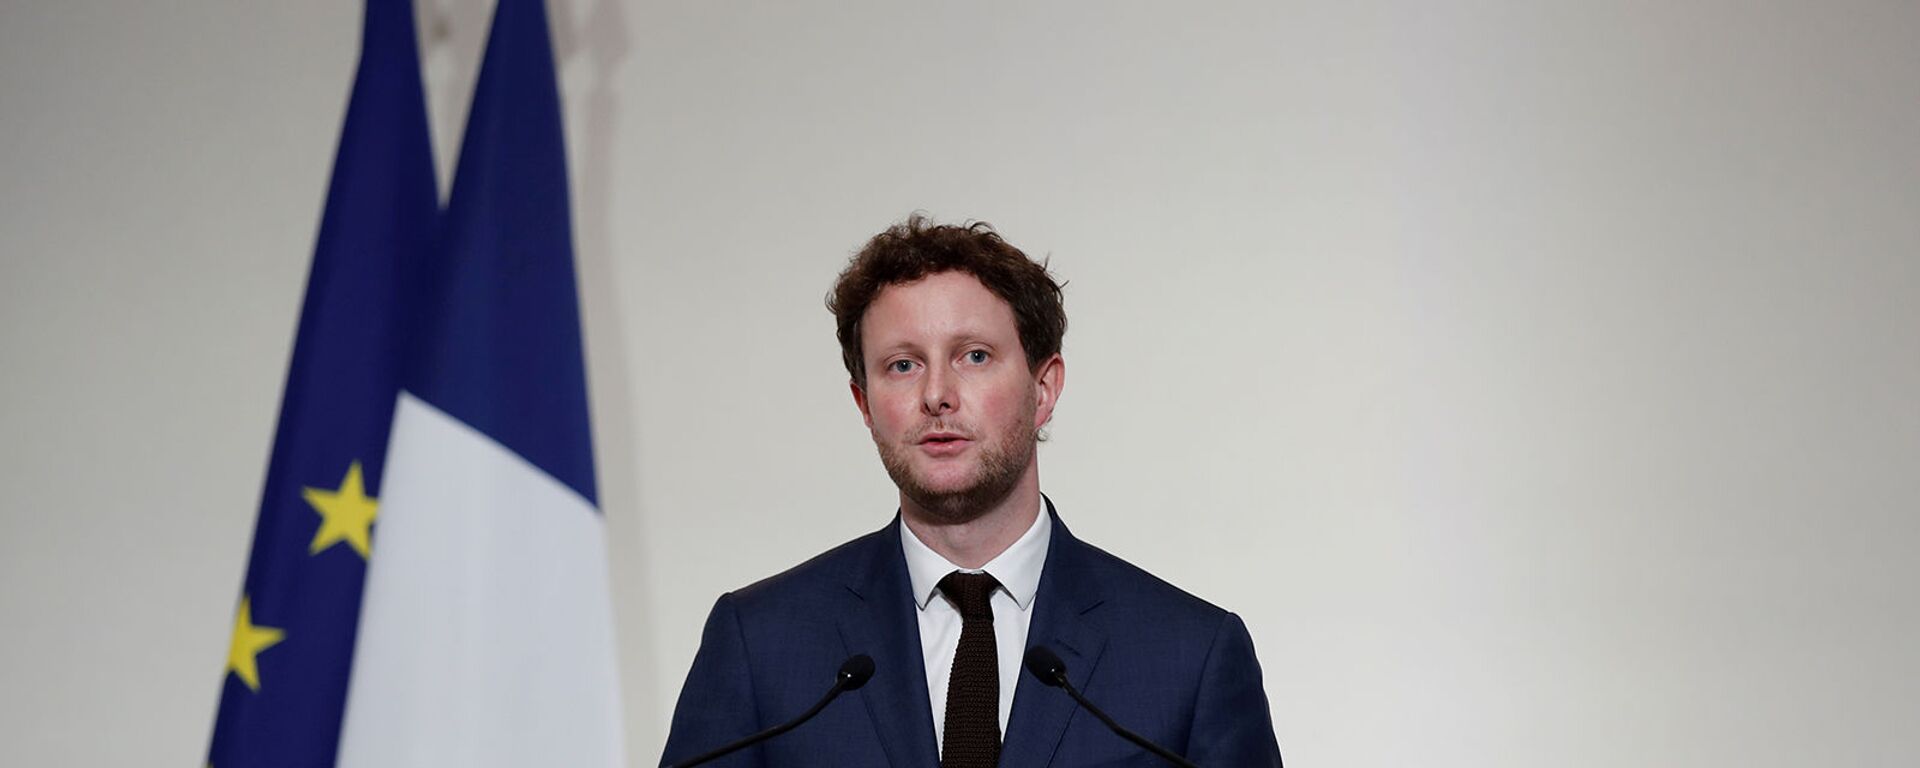 Младший министр Франции по европейским делам Клеман Бон на пресс-конференции (3 декабря 2020). Париж - Sputnik Армения, 1920, 08.07.2021